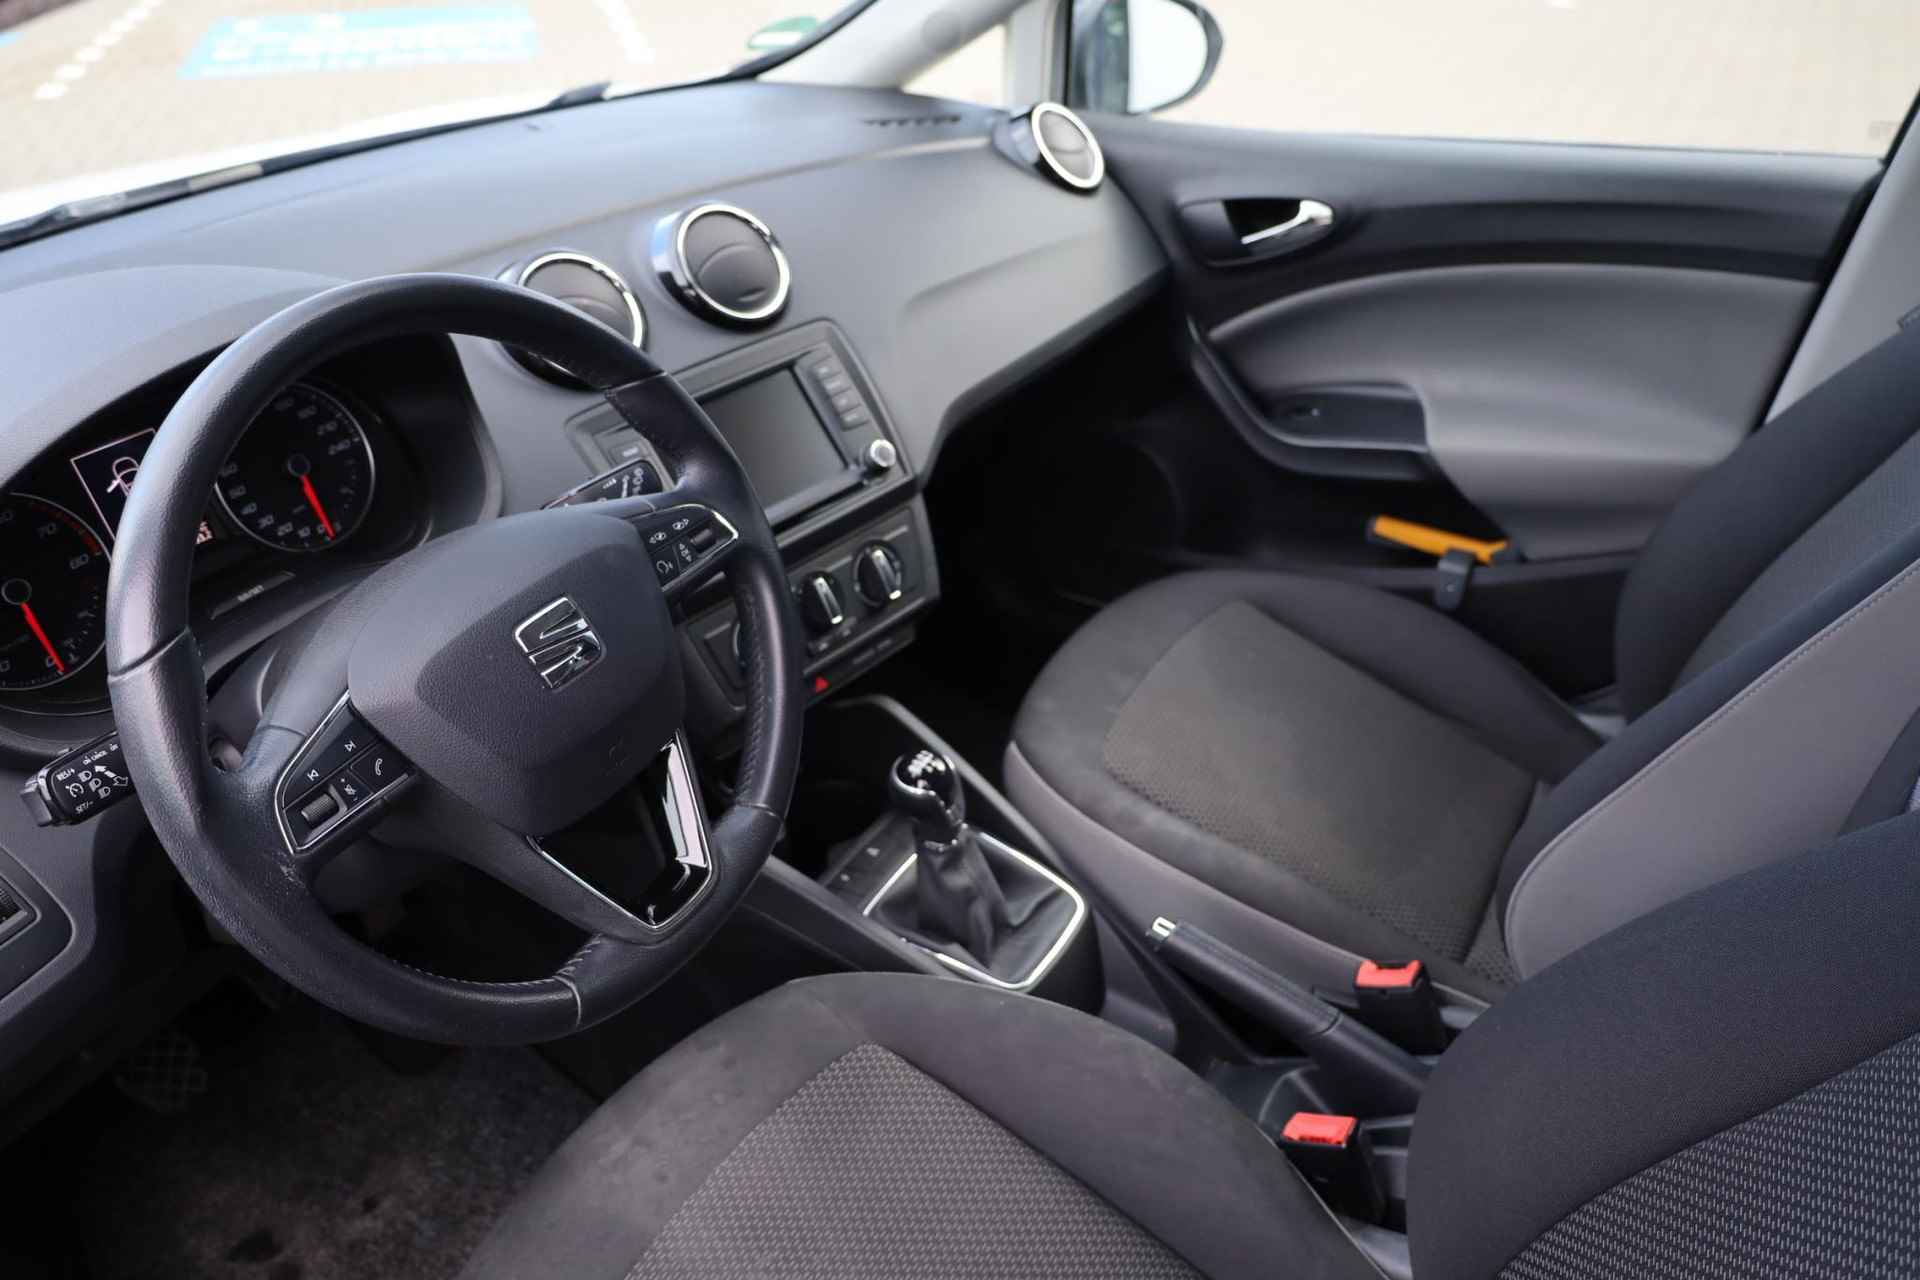 SEAT Ibiza 1.0 EcoTSI Style Connect 95PK / 70kW, 16" LMV zwart, navigatie, cruise control, parkeersensoren, multifunctioneel lederen stuurwiel, licht sensor, zwarte spiegelkappen + zwarte accenten, spiegels elektrisch inklapbaar - 10/38